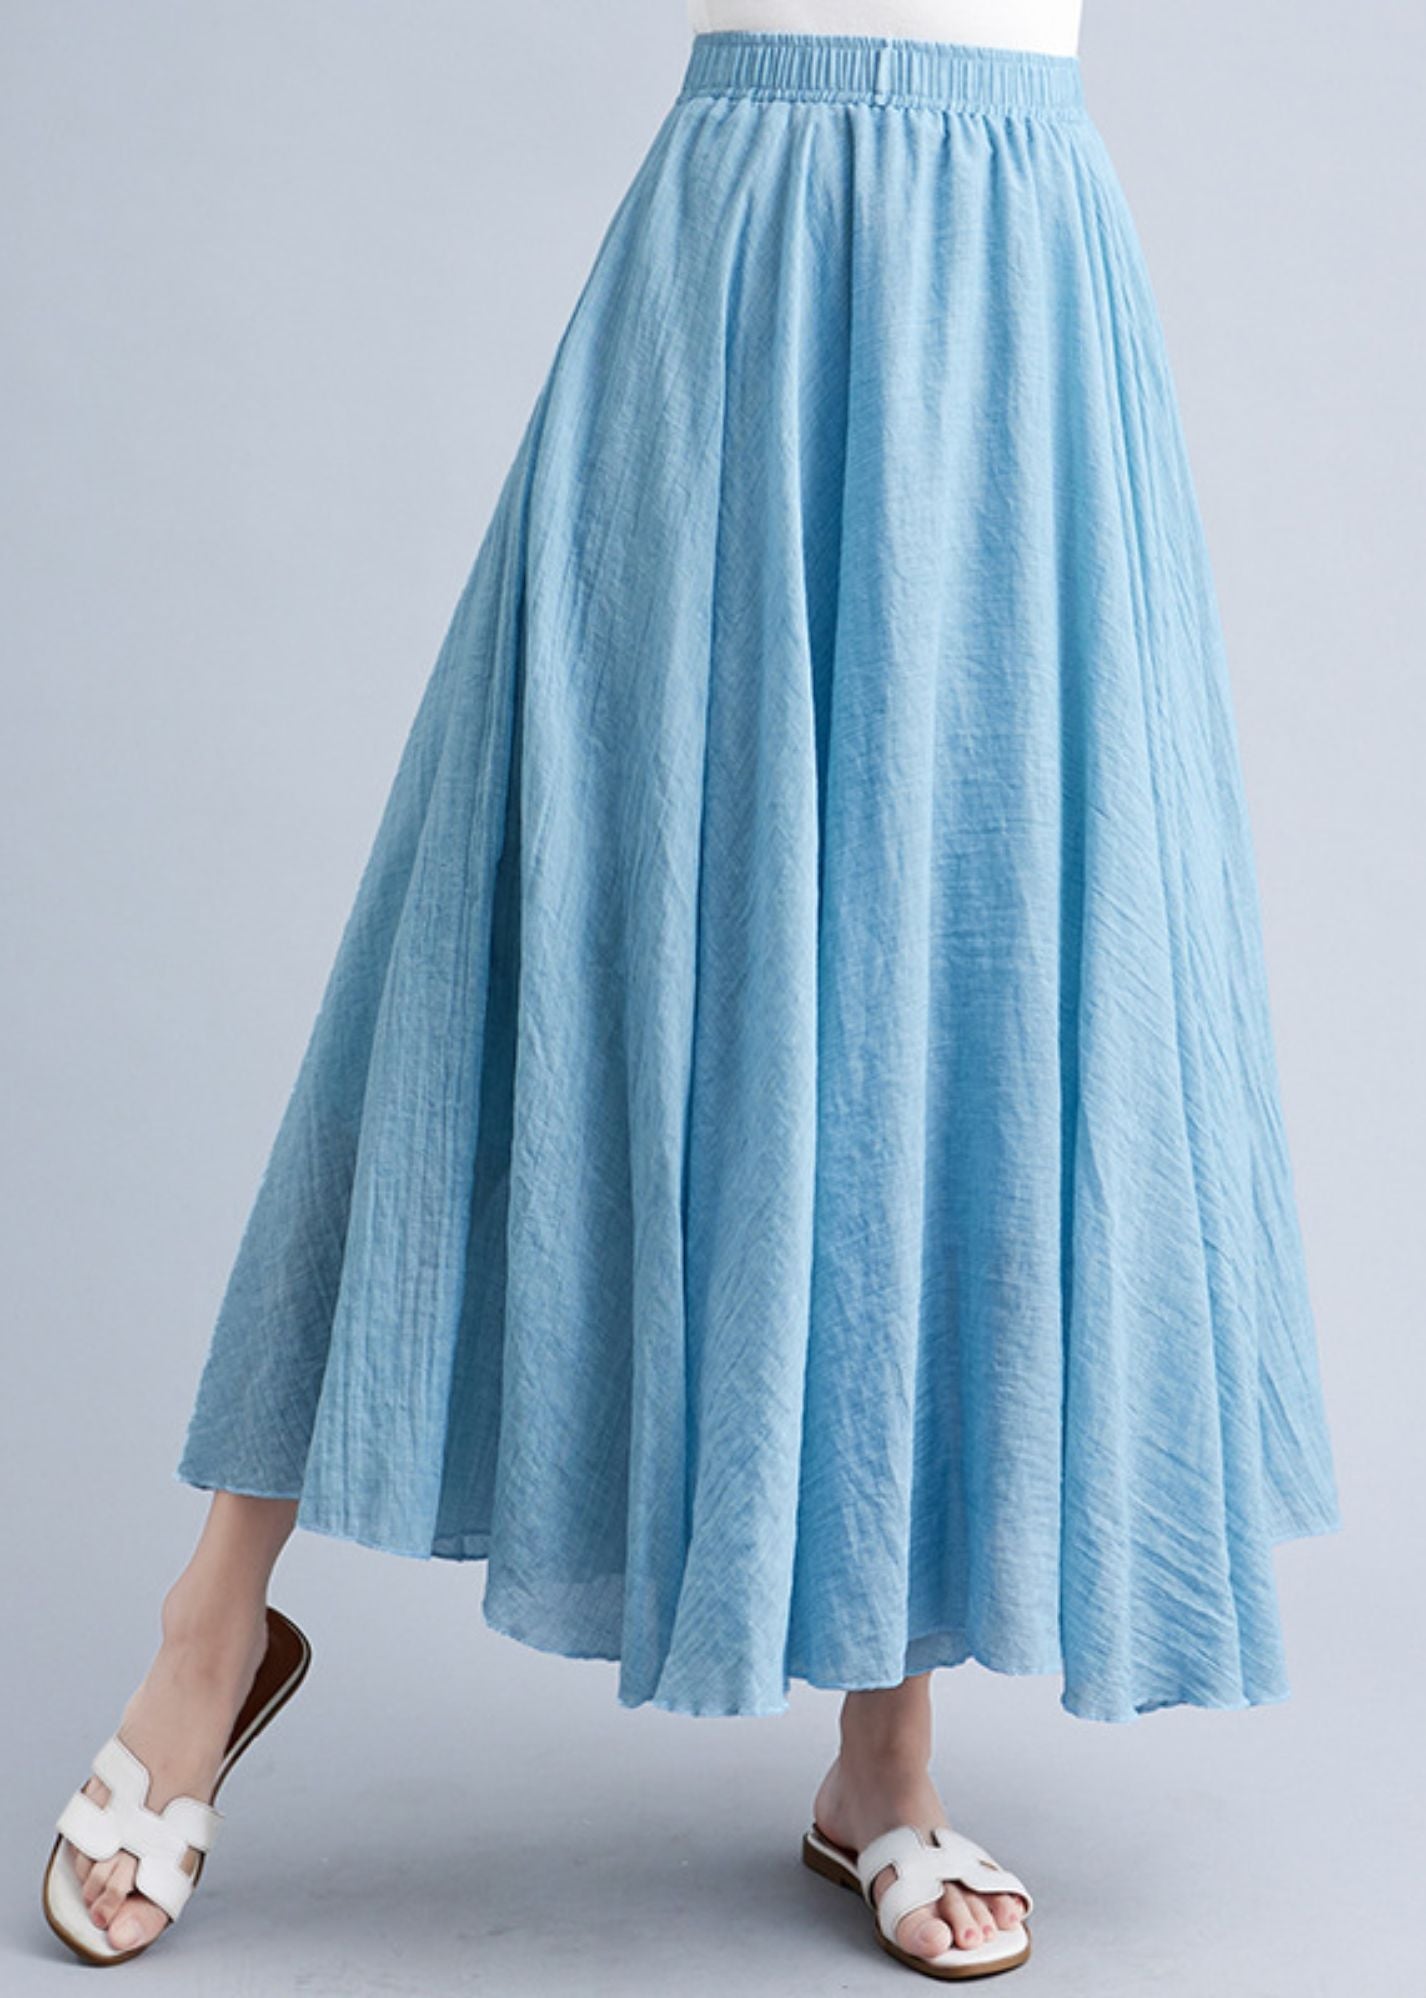 Women's Big Hem Artistic Cotton Linen Skirt